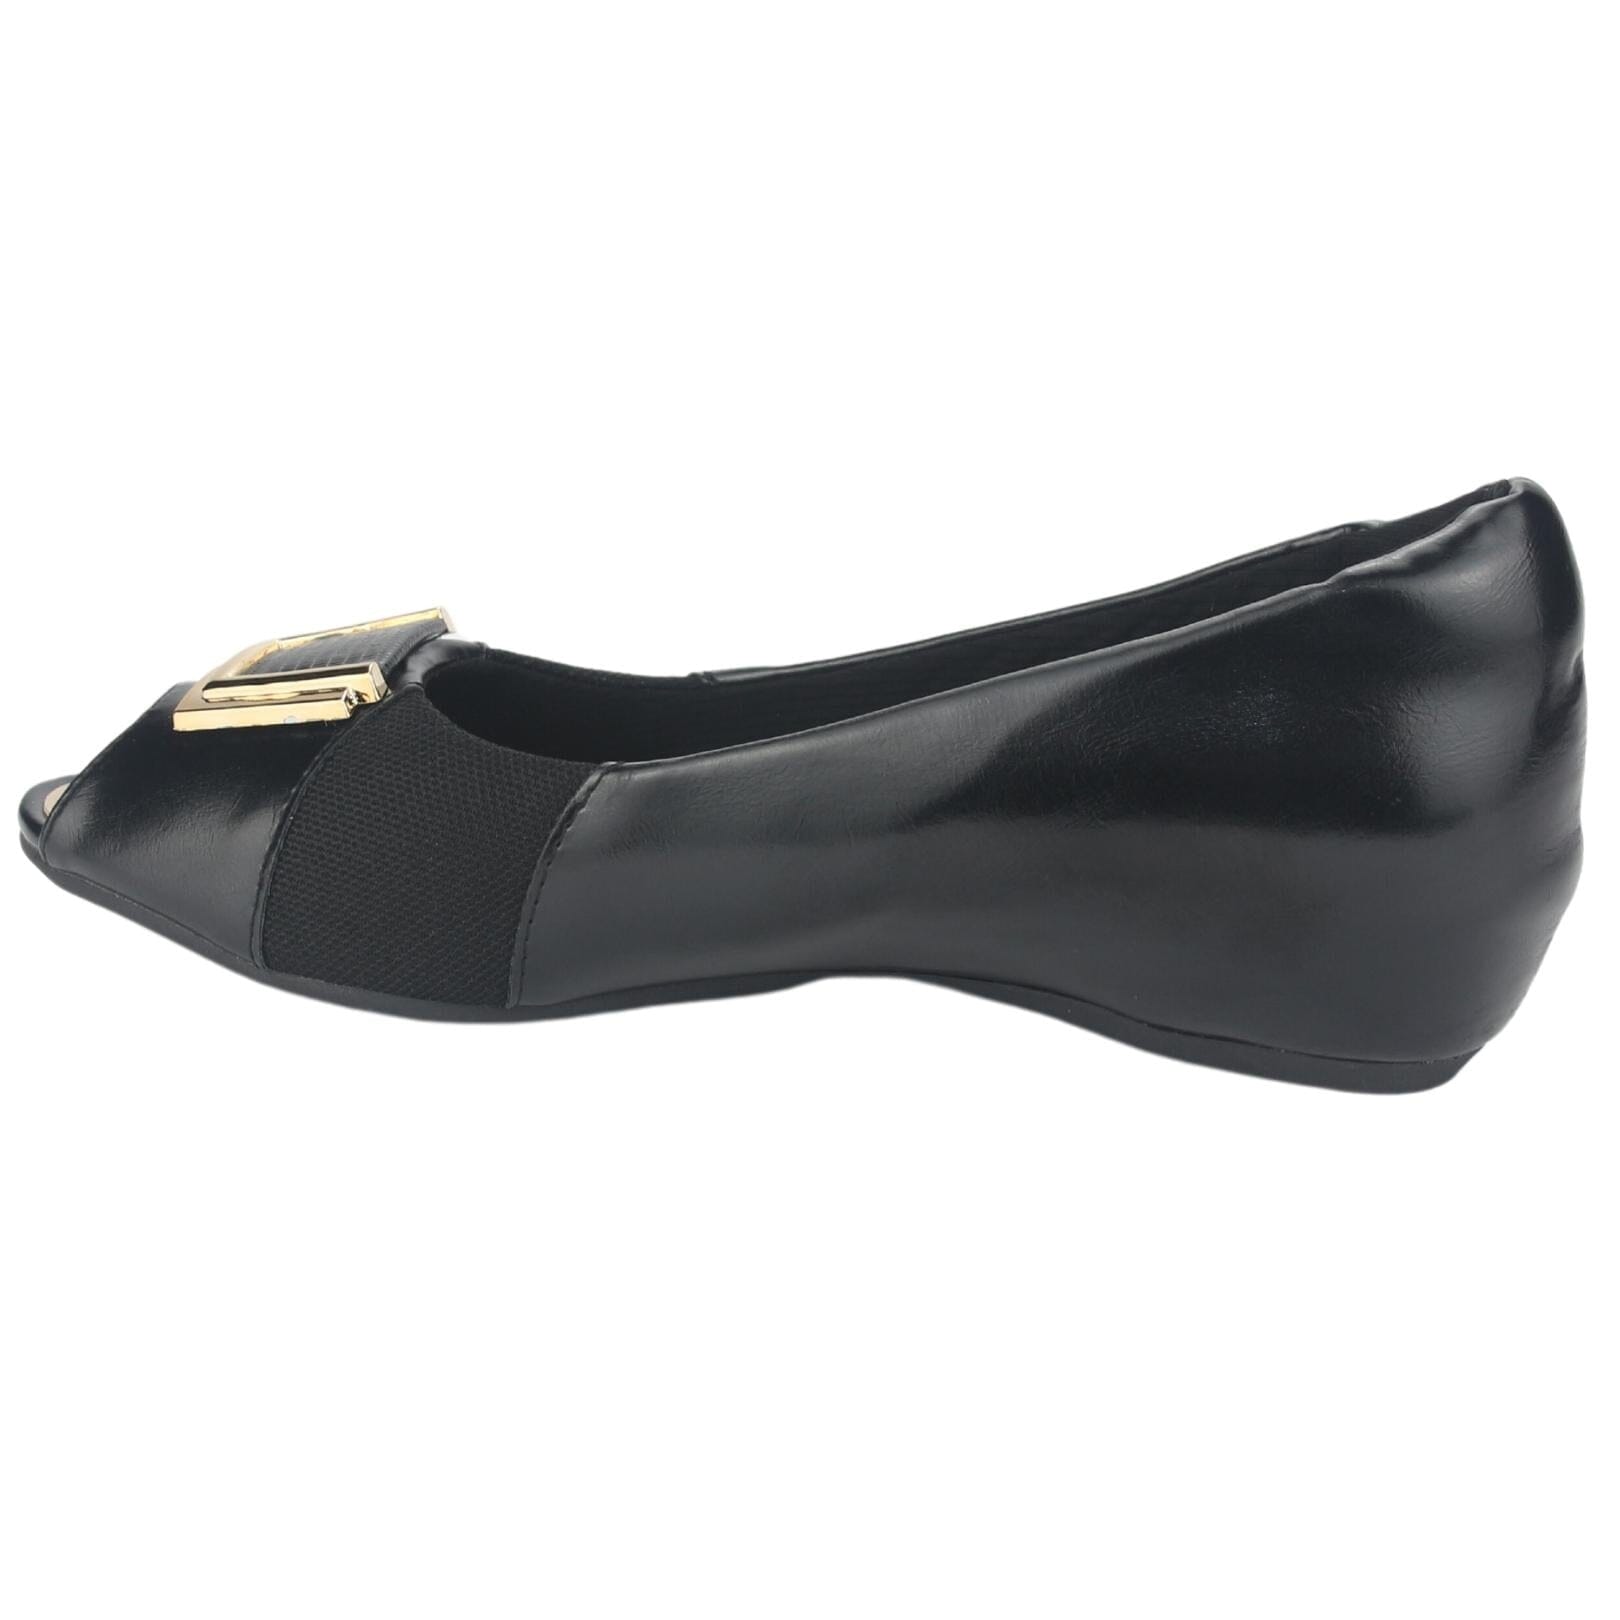 Zapato Chalada Mujer Demi-2 Negro Casual Tacones Bajos Chalada 